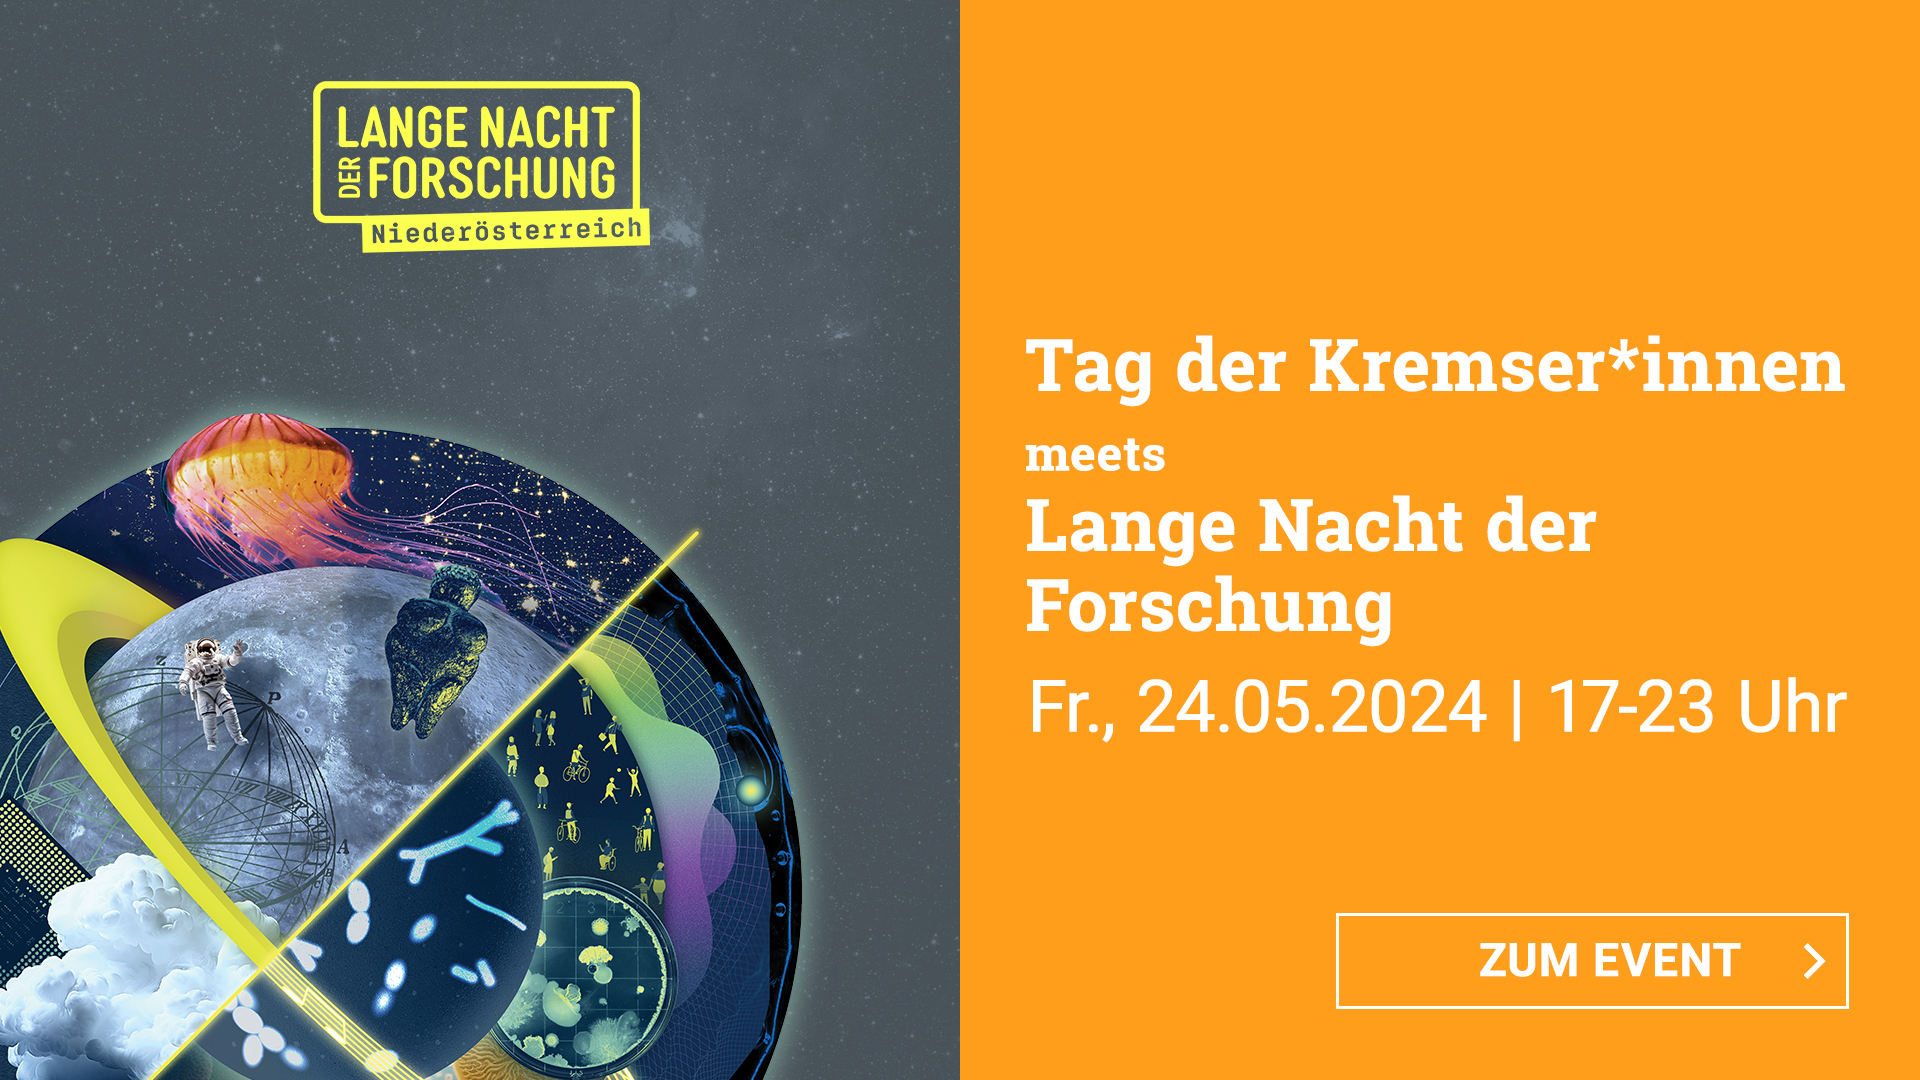 Tag der Kremser*innen meets Lange Nacht der Forschung - Fr., 24.05.2024 | 17-23 Uhr